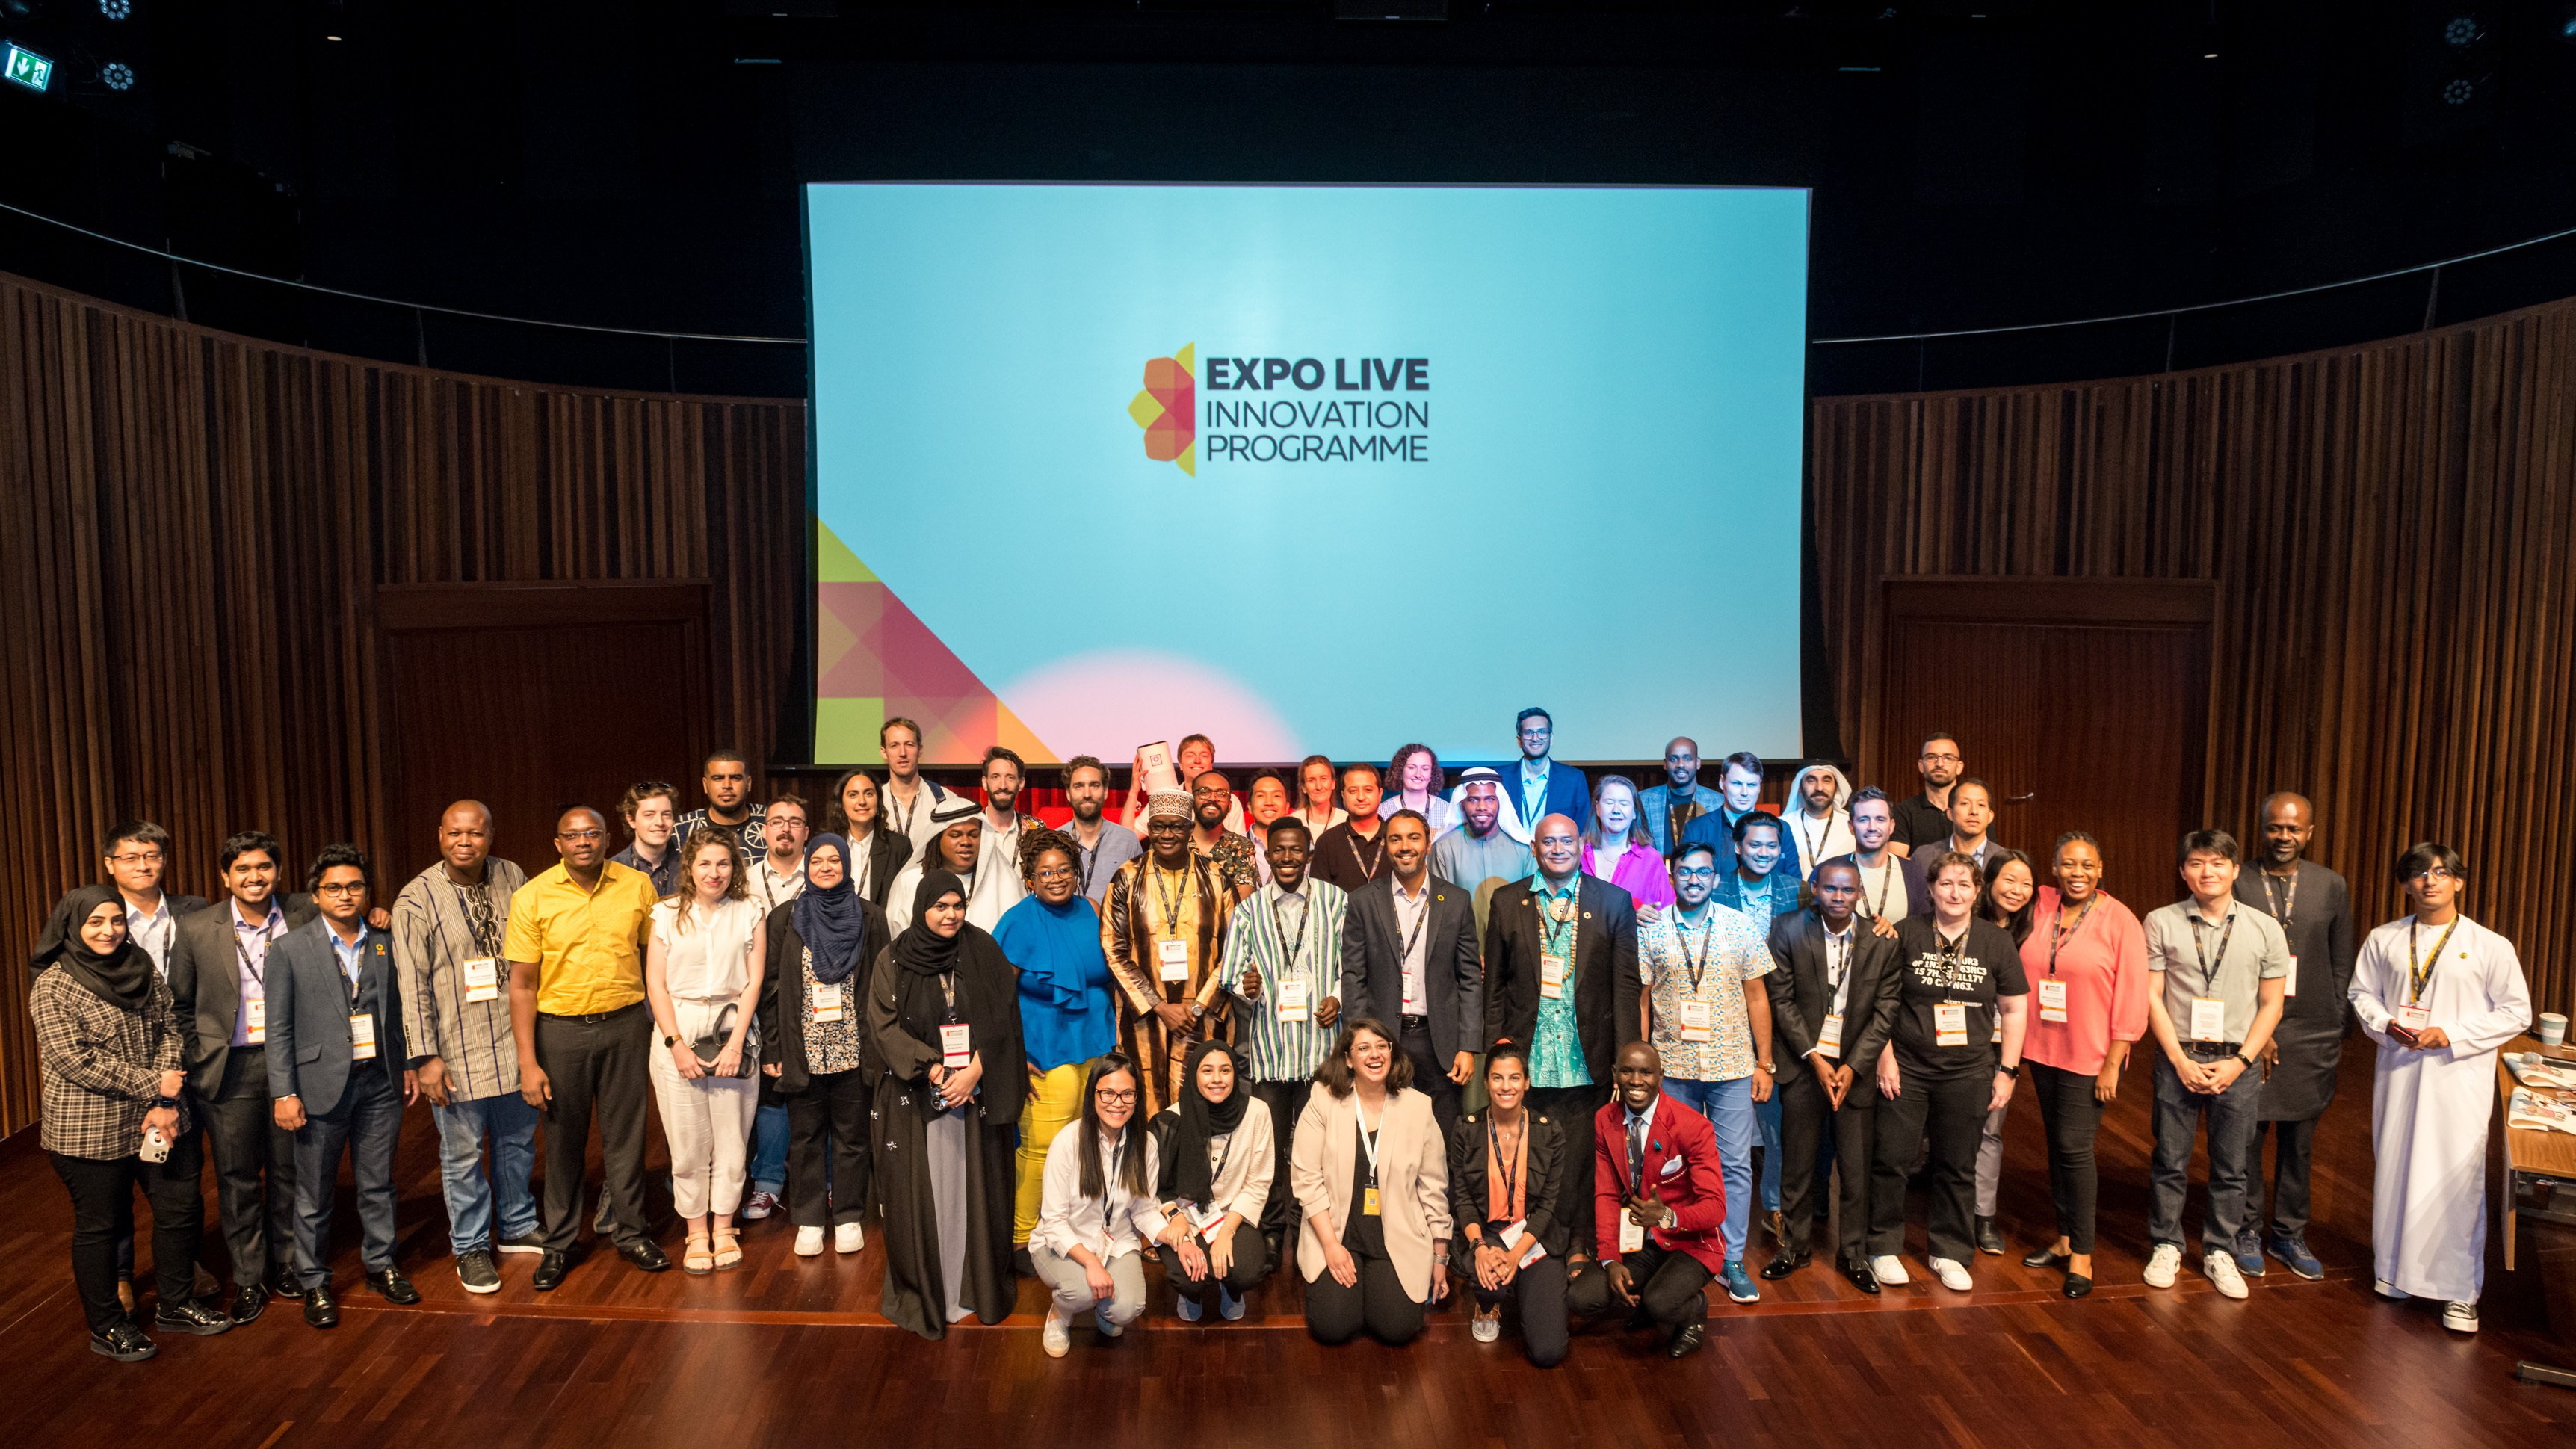 Ein Gruppenfoto, ca. 60 Menschen. Dahinter ein großer Bildschirm, auf dem das Logo des Expo Live Innovation Programms zu sehen ist.